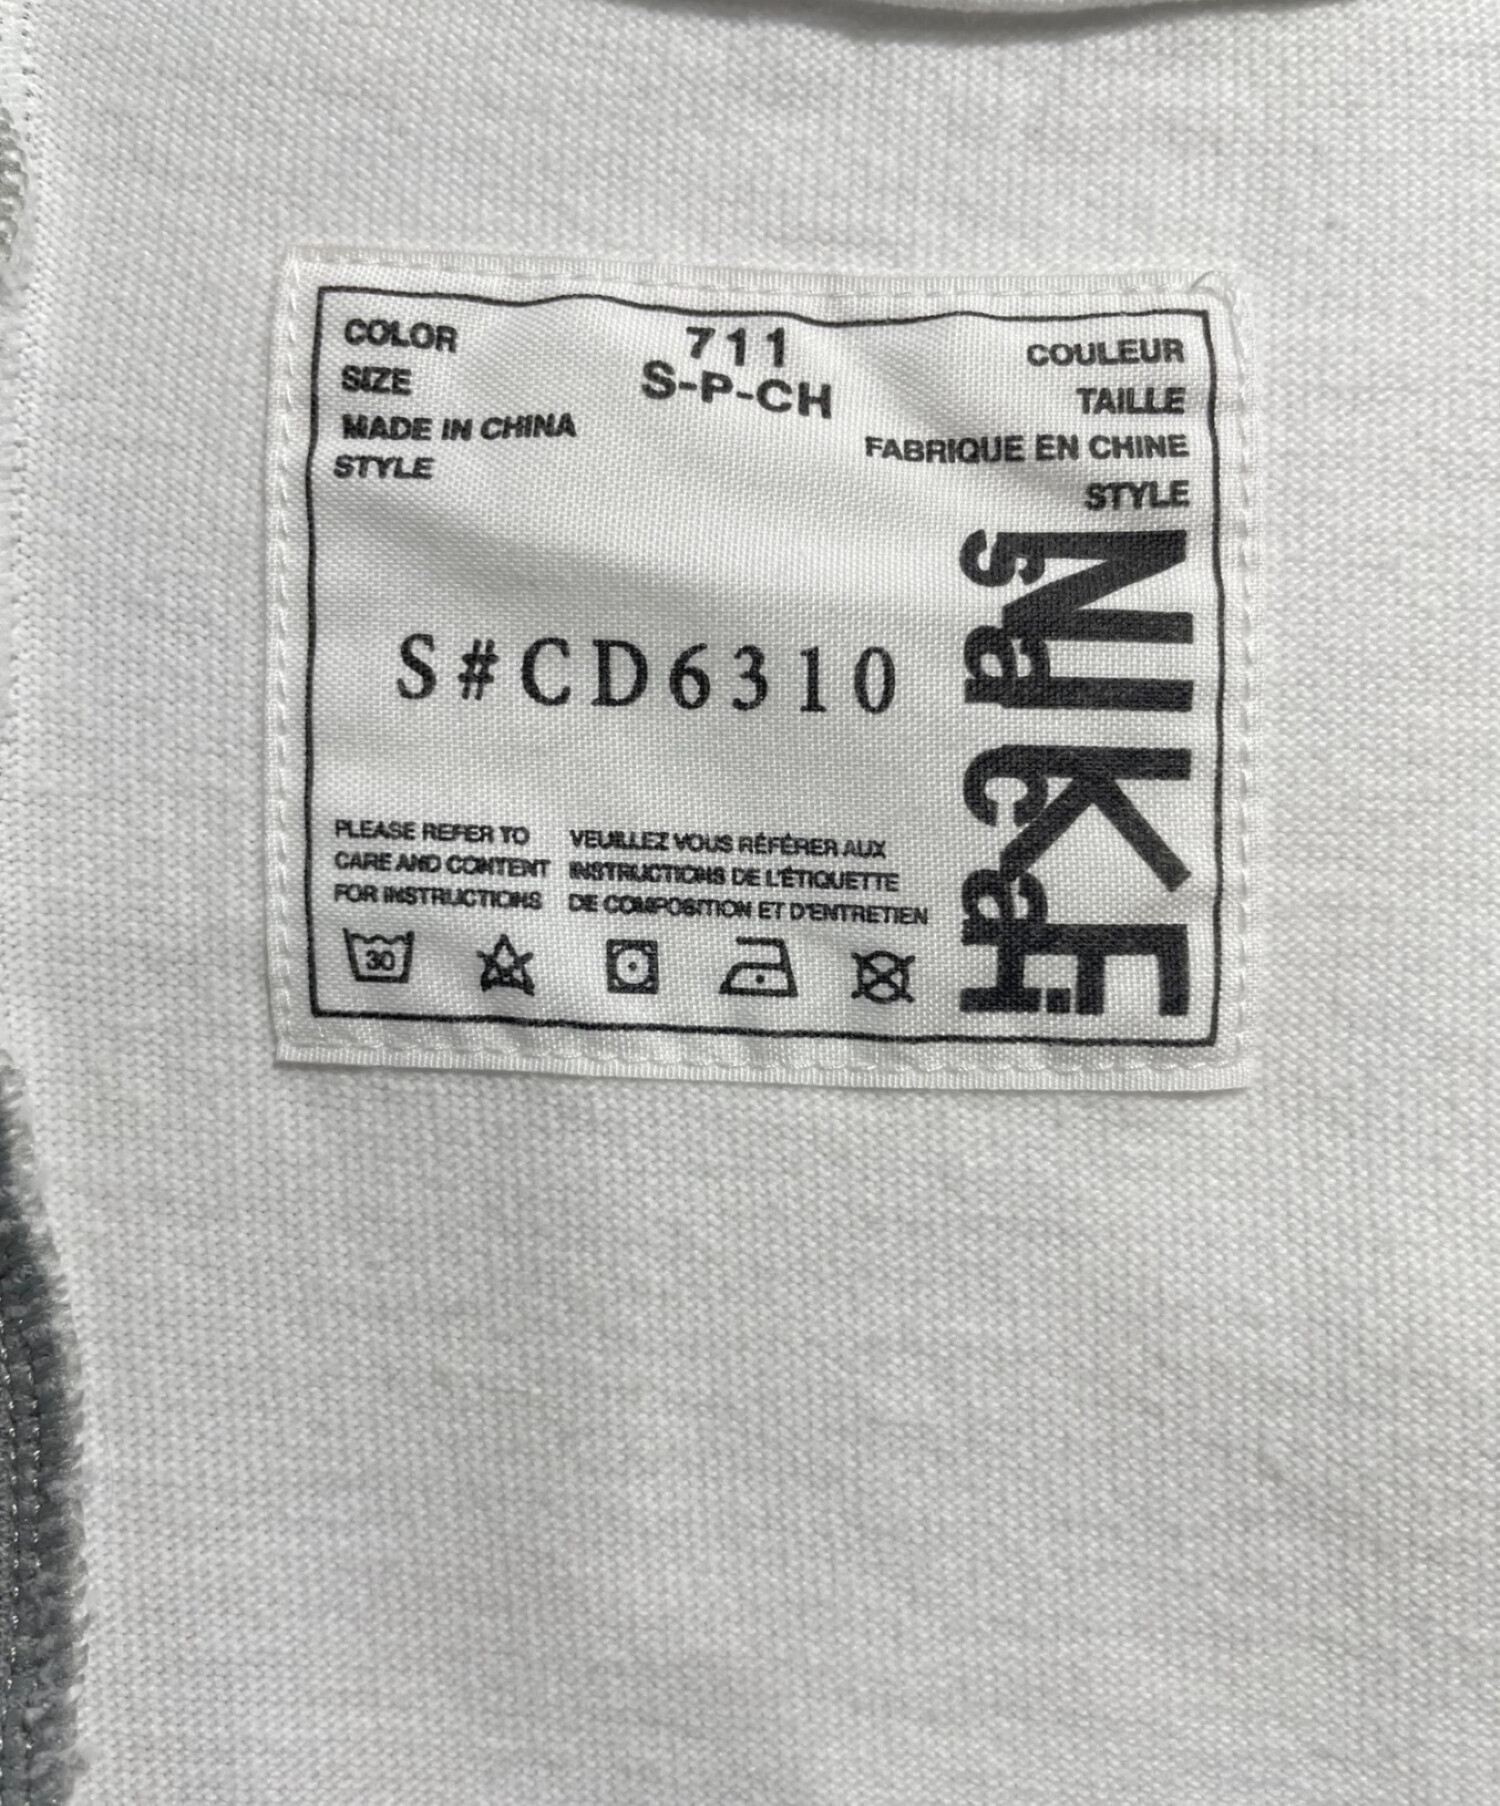 NIKE (ナイキ) sacai (サカイ) 再構築Tシャツ サイズ:S